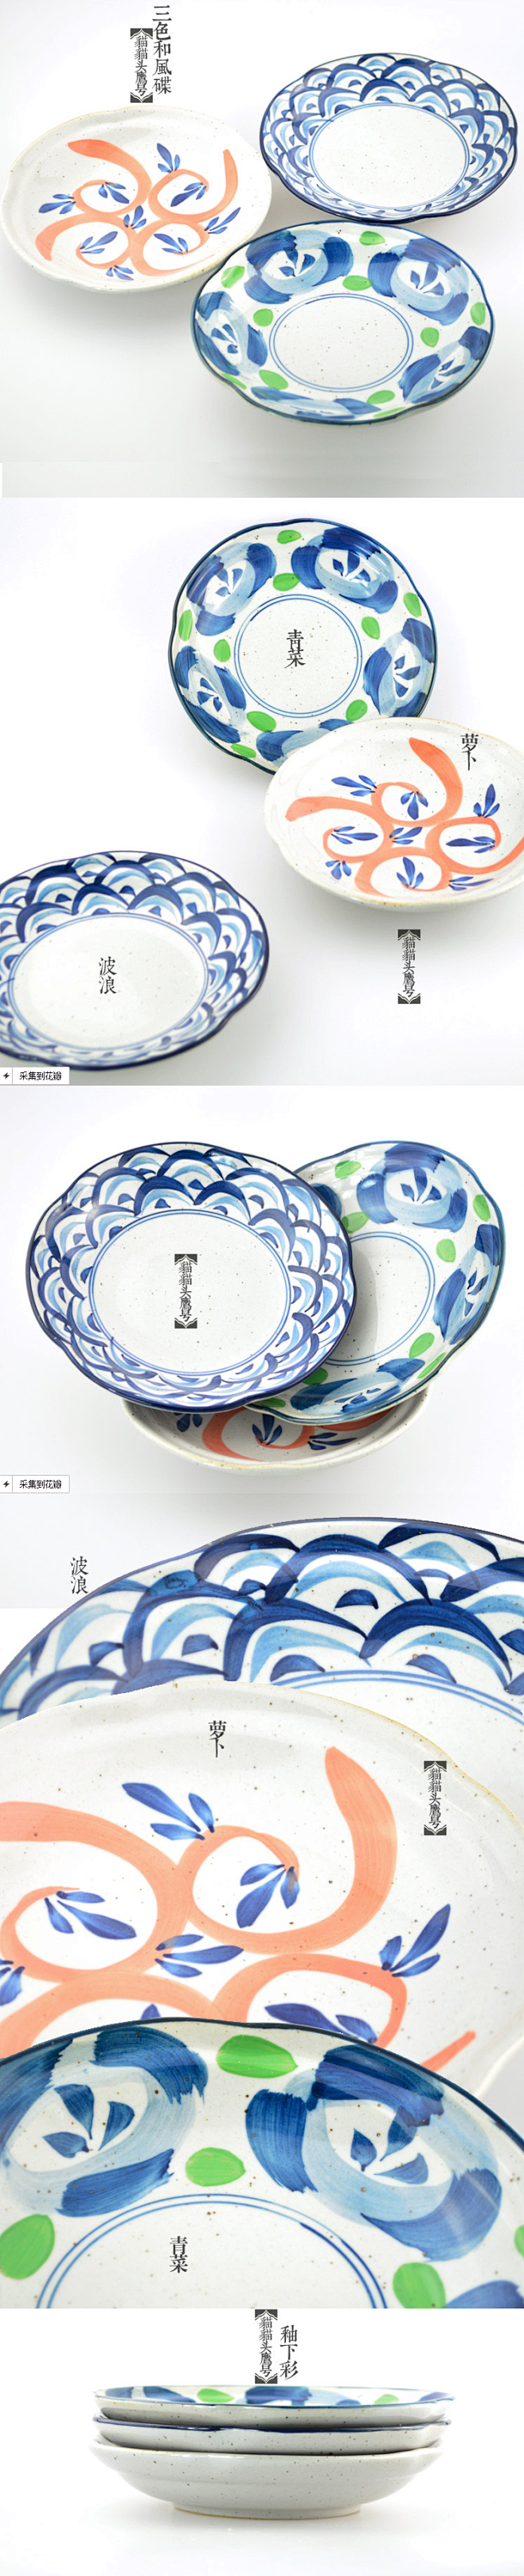 日式和风陶瓷手绘田园 餐盘 菜碟 盘碟子...